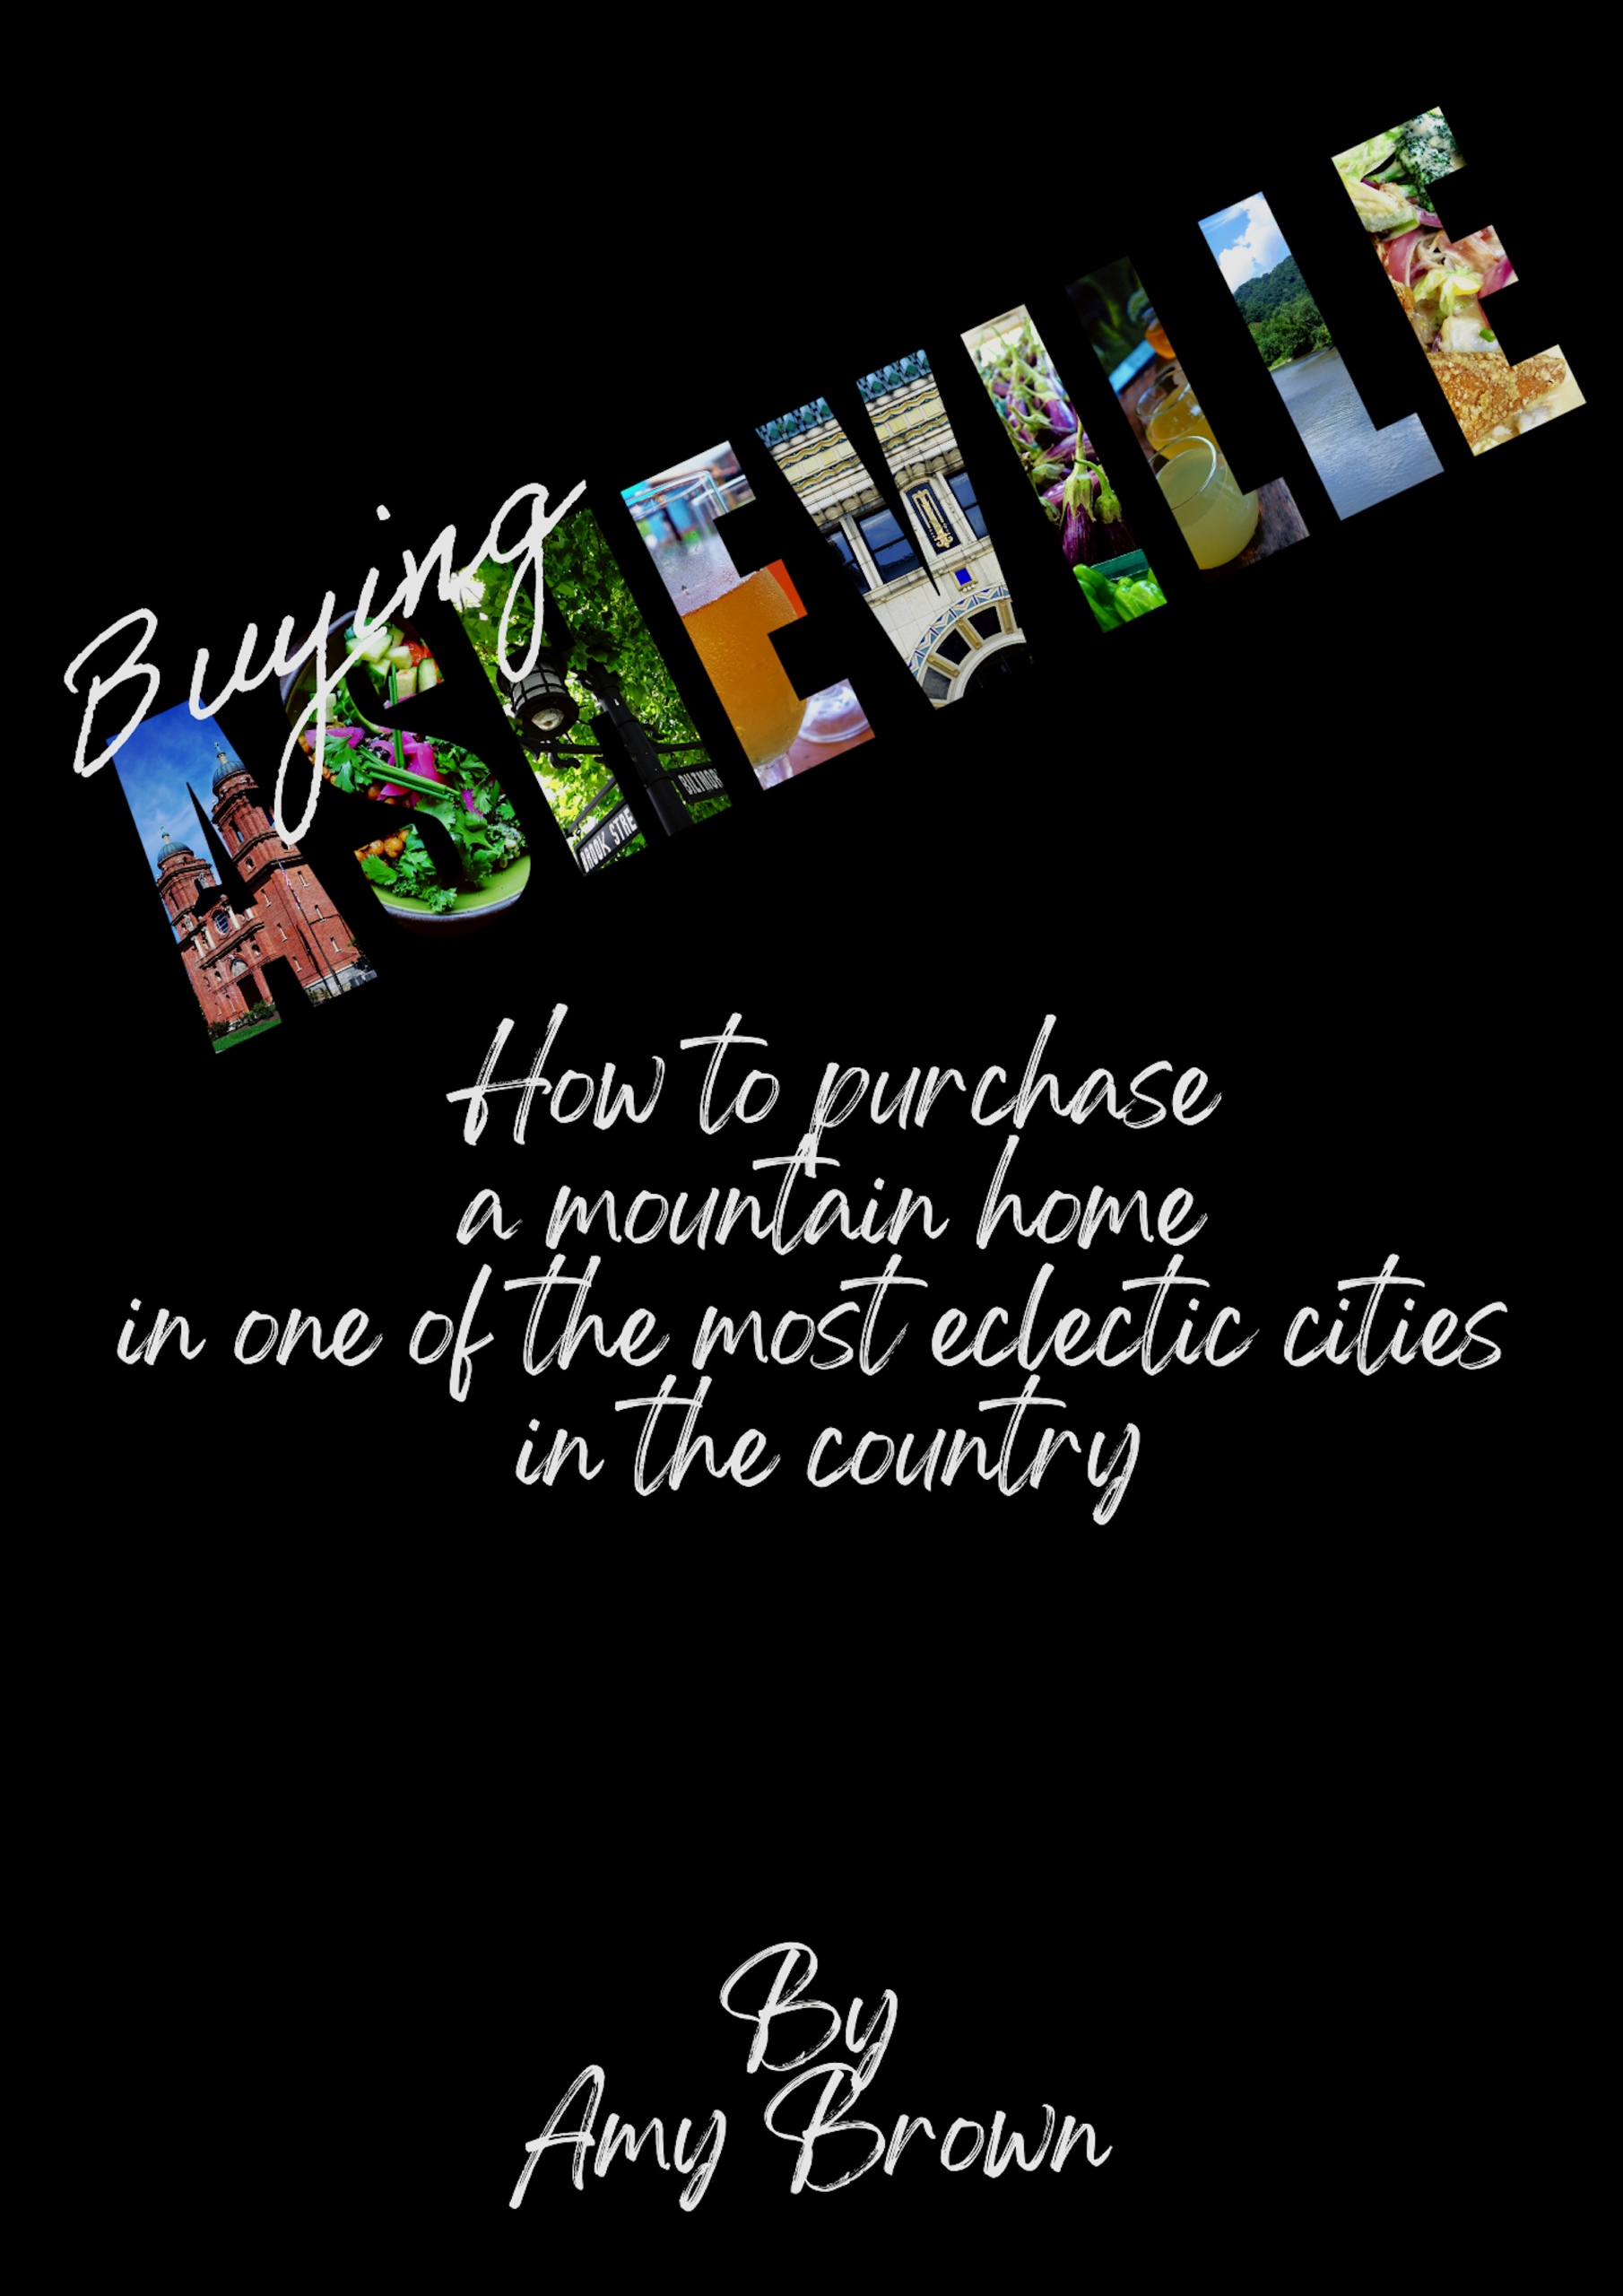 Buying-Asheville-Kindle.jpg